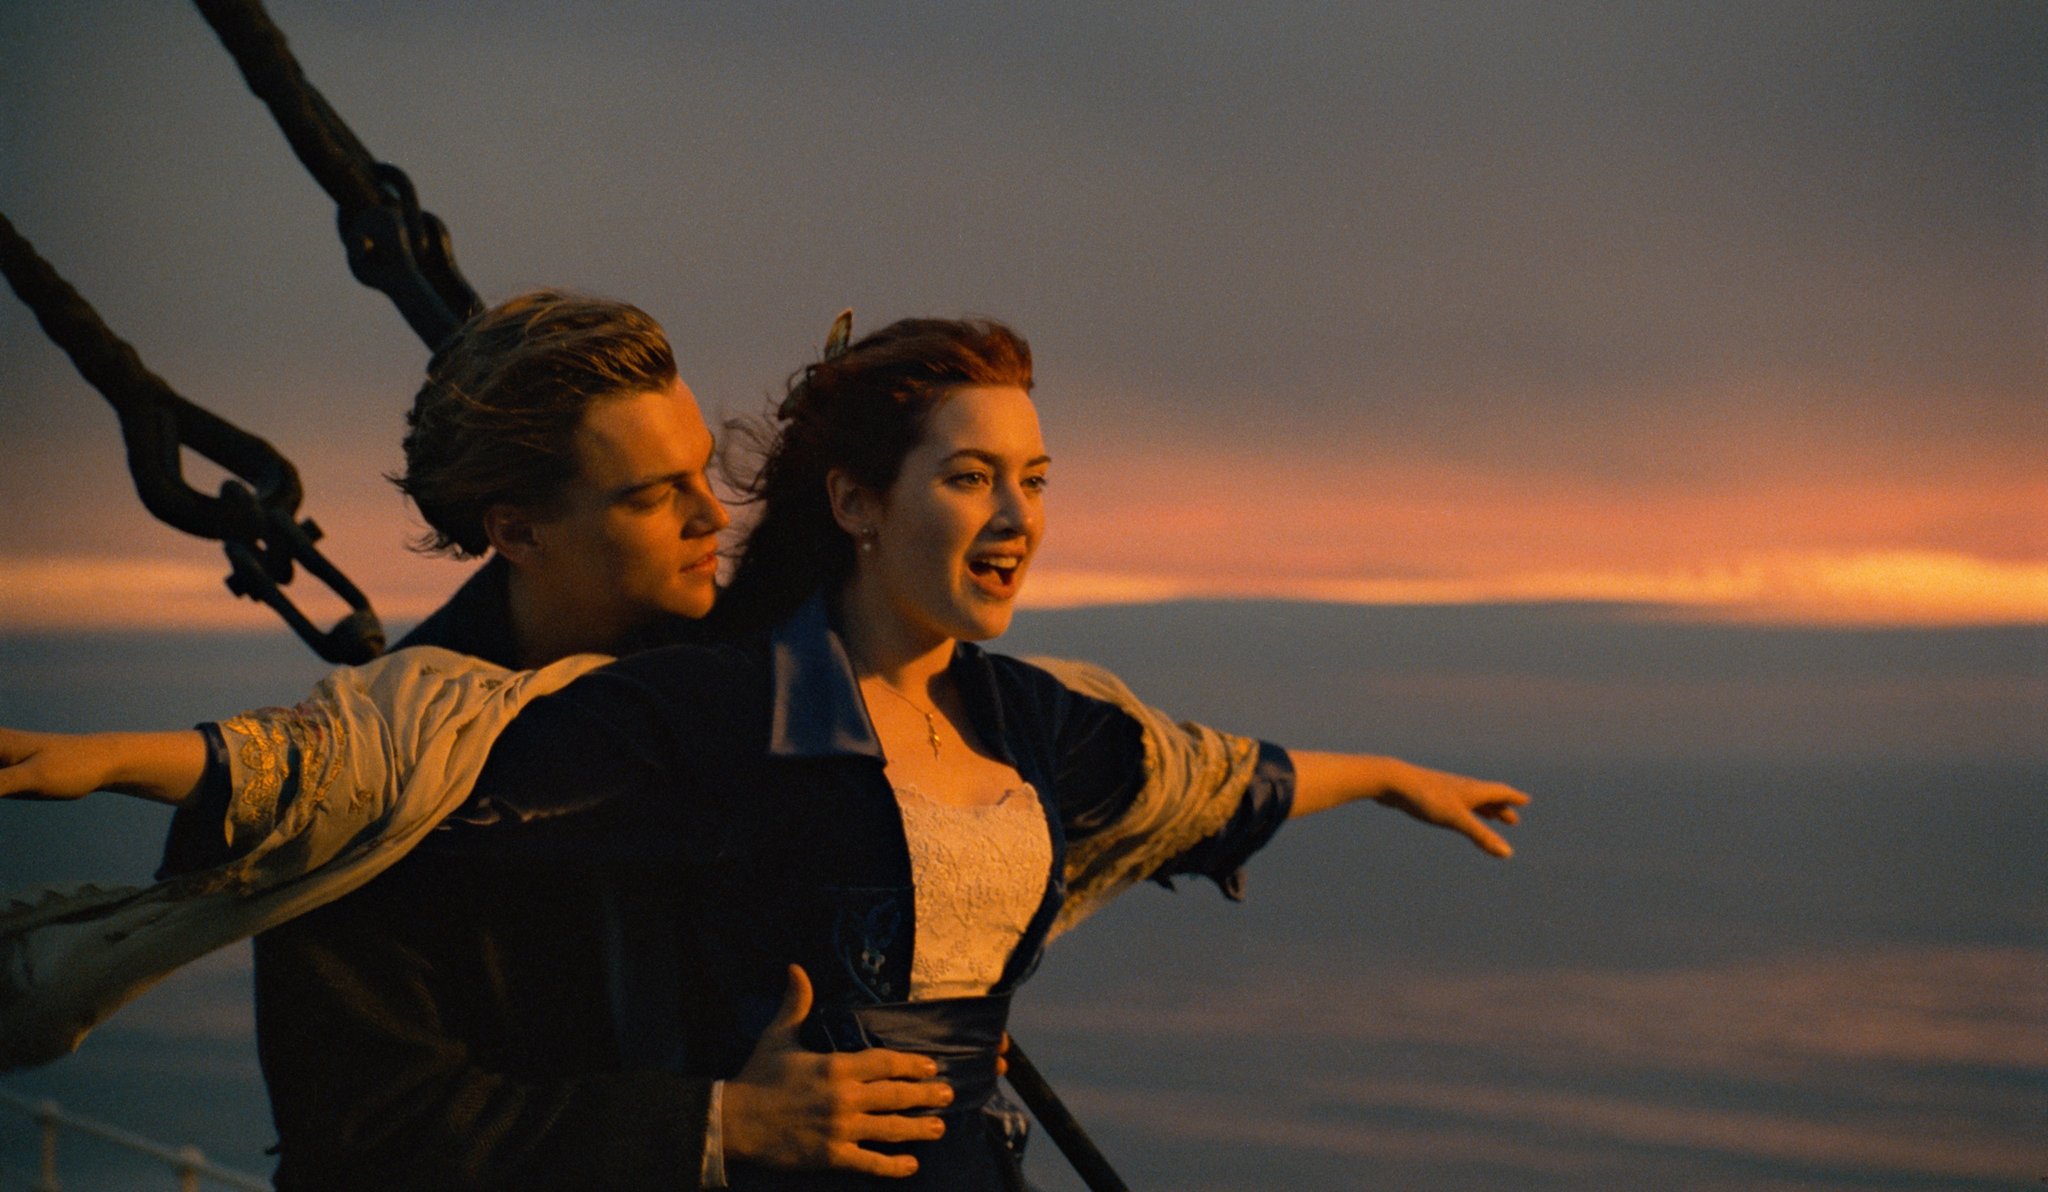 Os 20 anos de “Titanic”, o navio dos sonhos